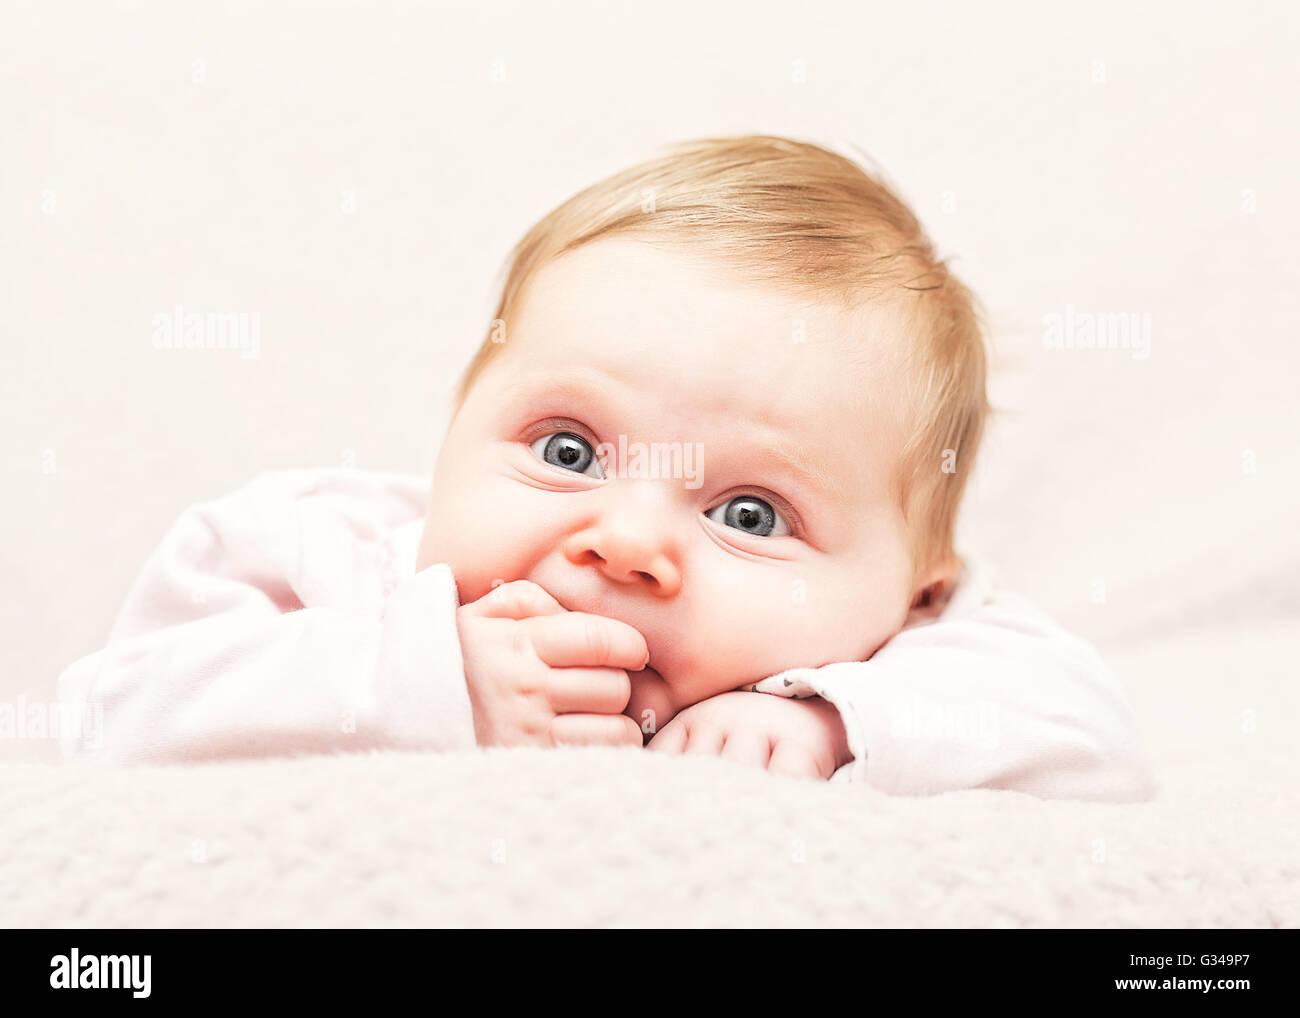 niedliche Baby Portrait schließen Sie herauf Bild Stockfoto